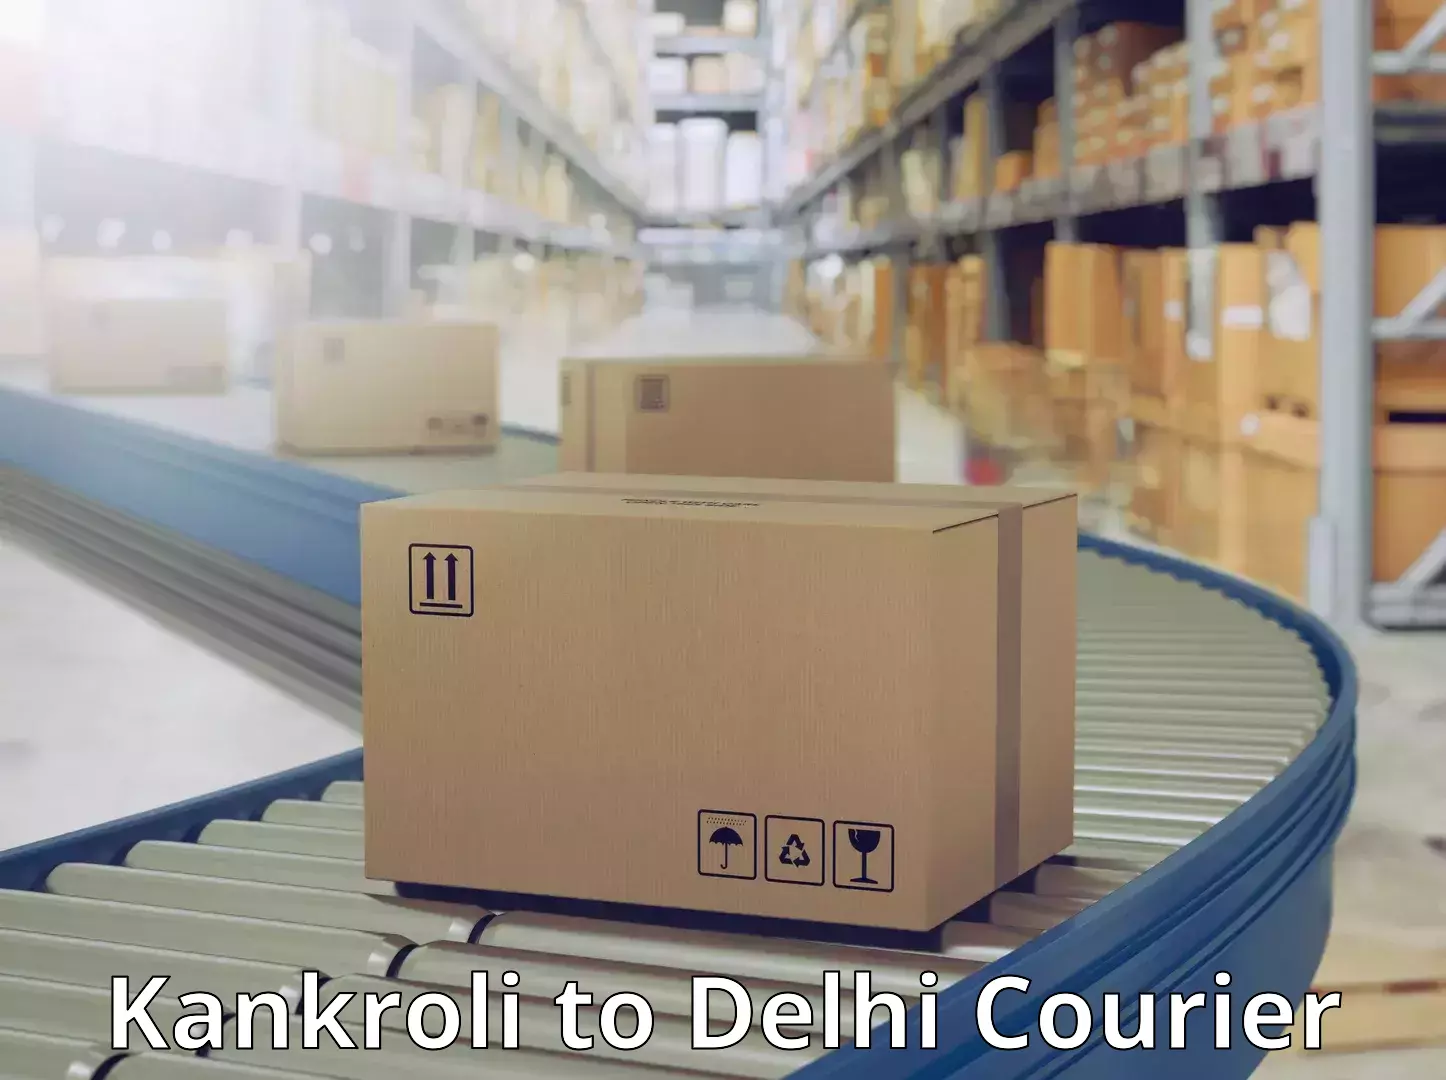 24/7 courier service Kankroli to Jamia Millia Islamia New Delhi